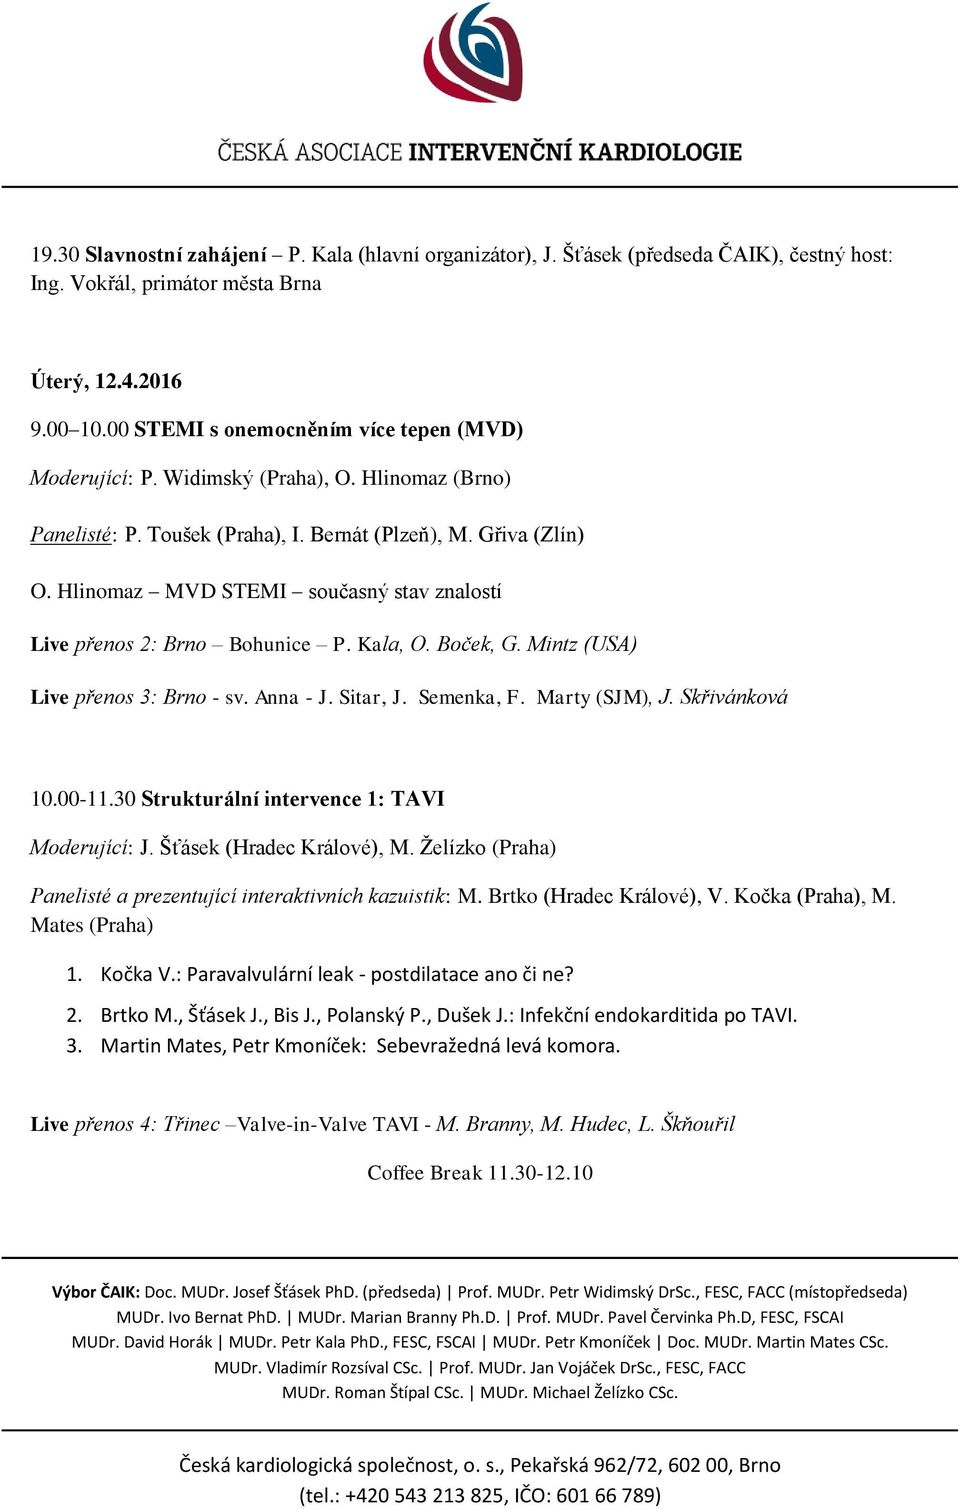 Hlinomaz MVD STEMI současný stav znalostí Live přenos 2: Brno Bohunice P. Kala, O. Boček, G. Mintz (USA) Live přenos 3: Brno - sv. Anna - J. Sitar, J. Semenka, F. Marty (SJM), J. Skřivánková 10.00-11.